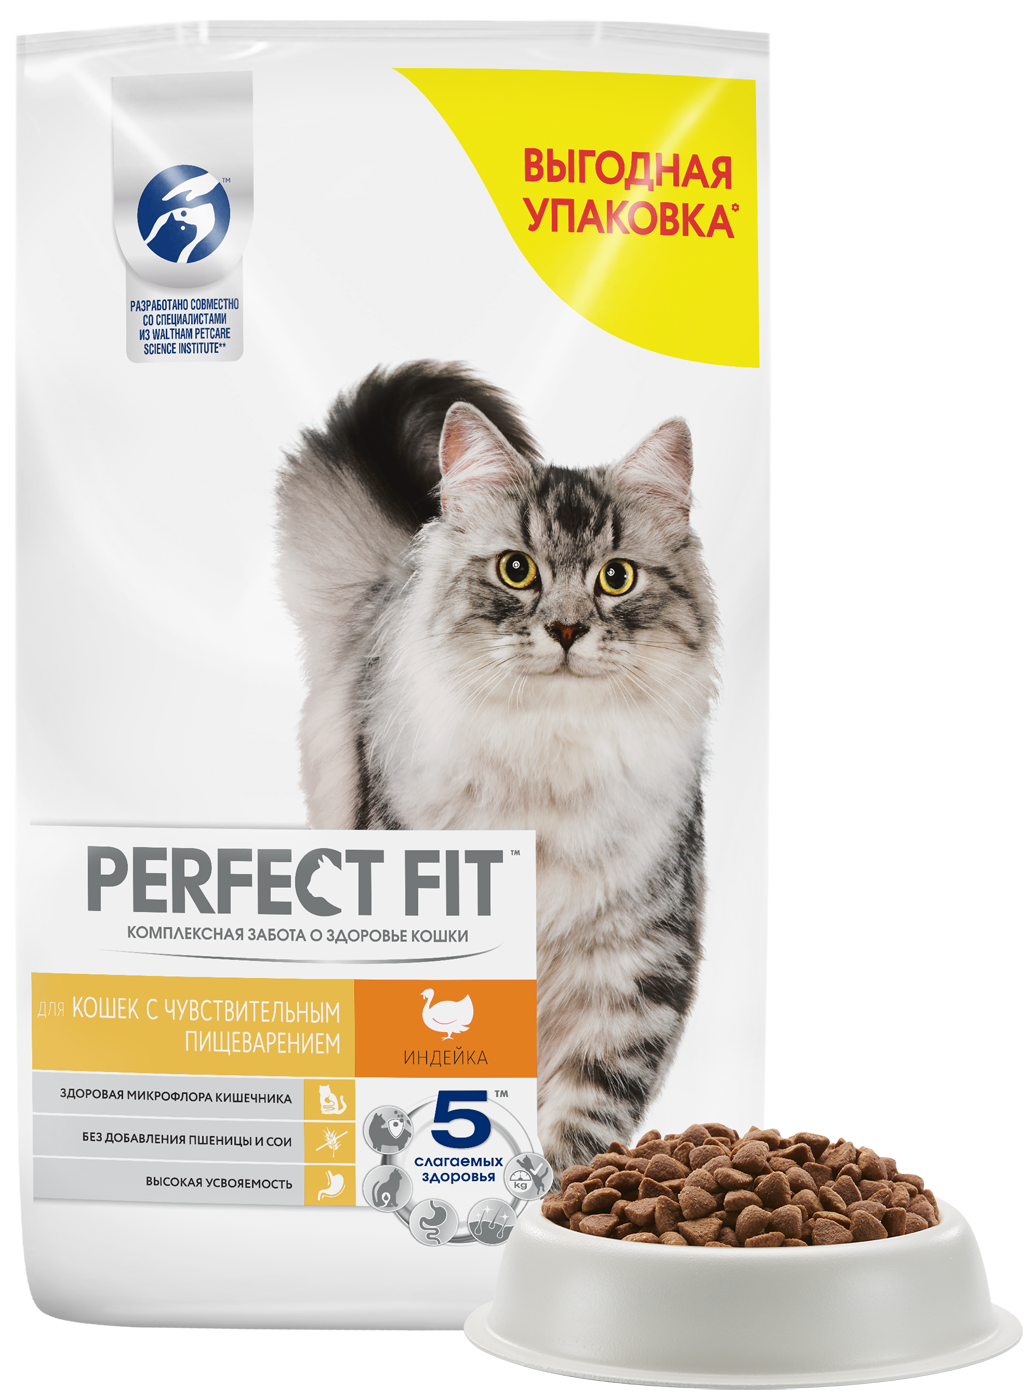 Perfect Fit Sensitive Сухой корм для кошек с чувствительным пищеварением, с индейкой 10 кг